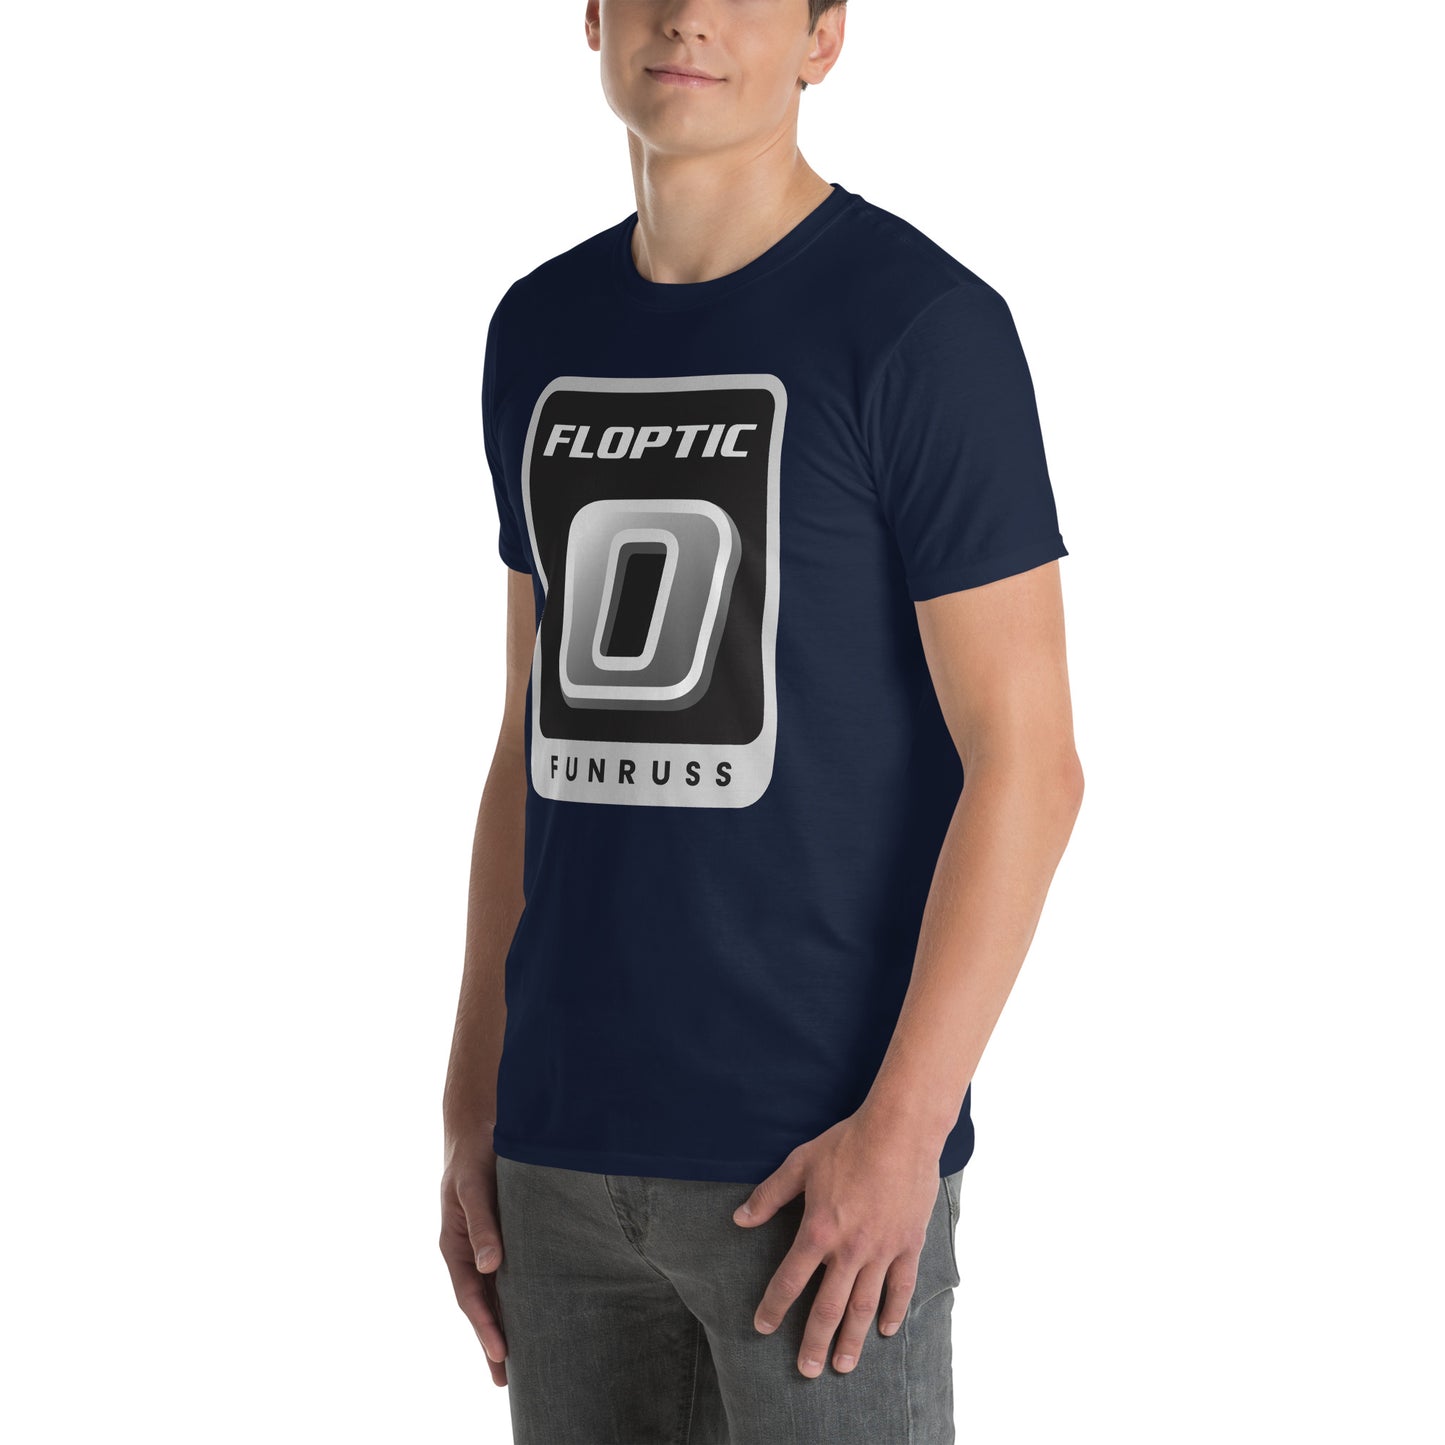 Funruss Floptic Short-Sleeve Unisex T-Shirt